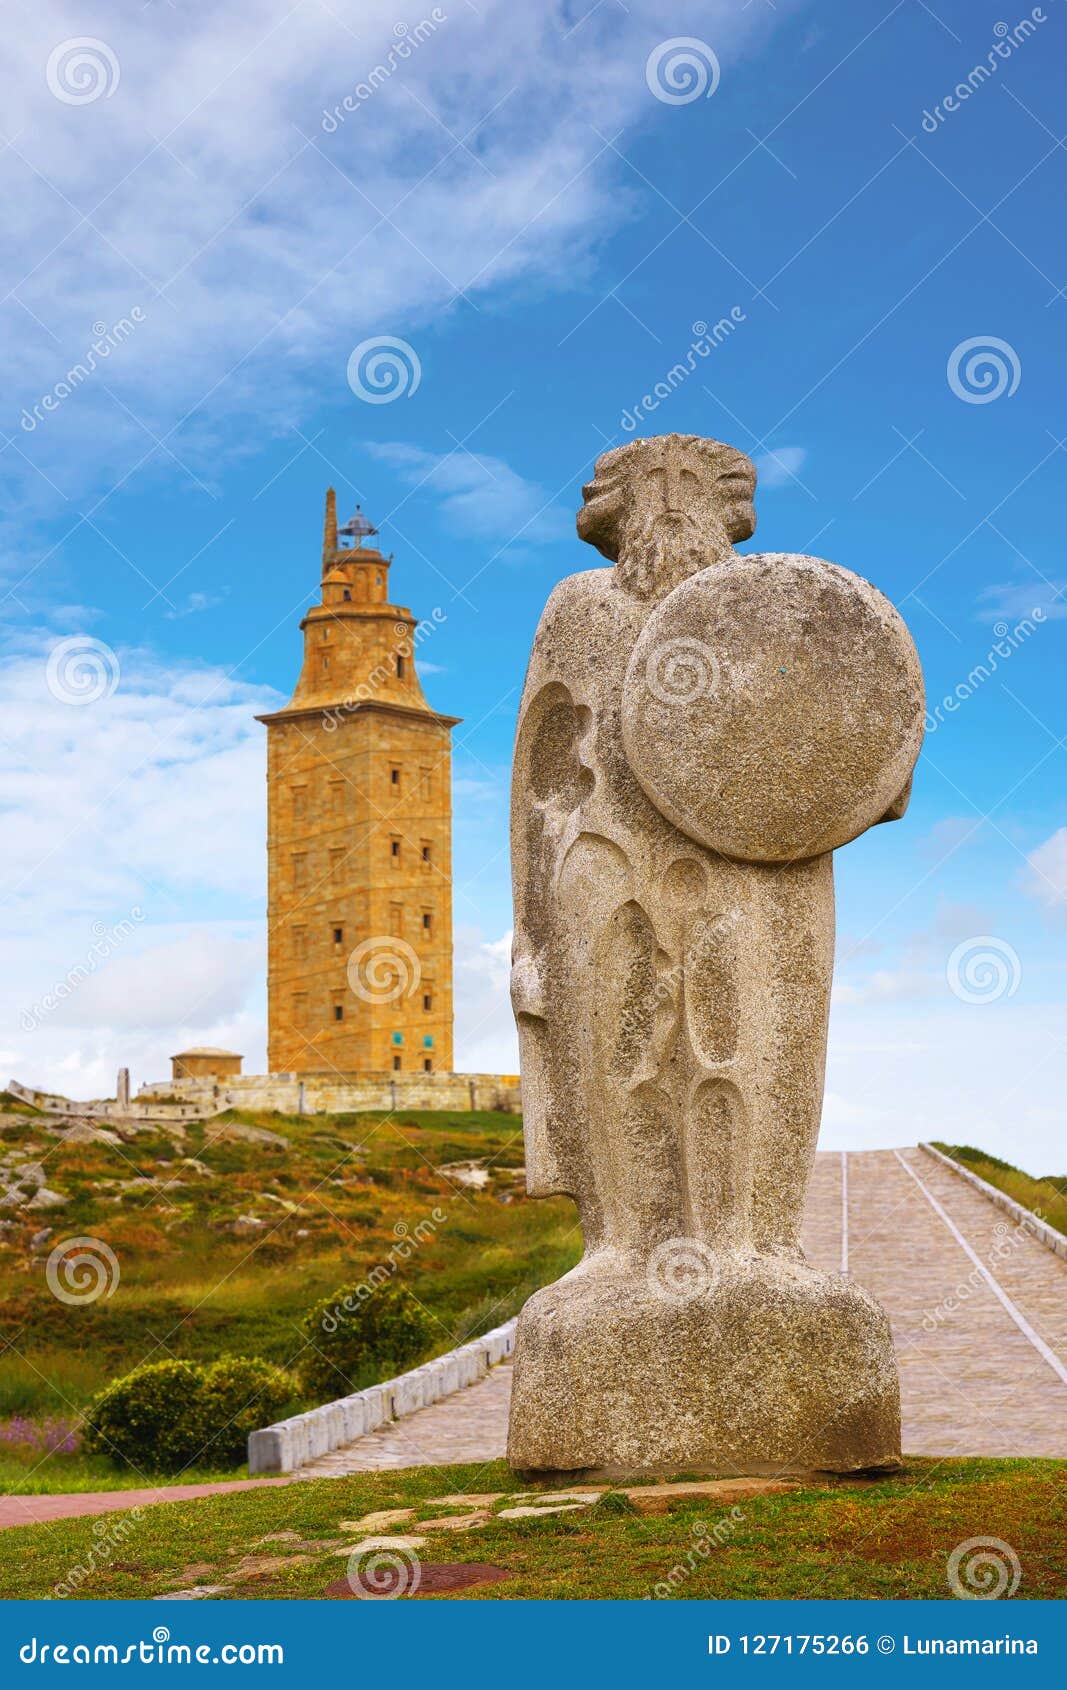 la coruna breogan statue at hercules tower galicia